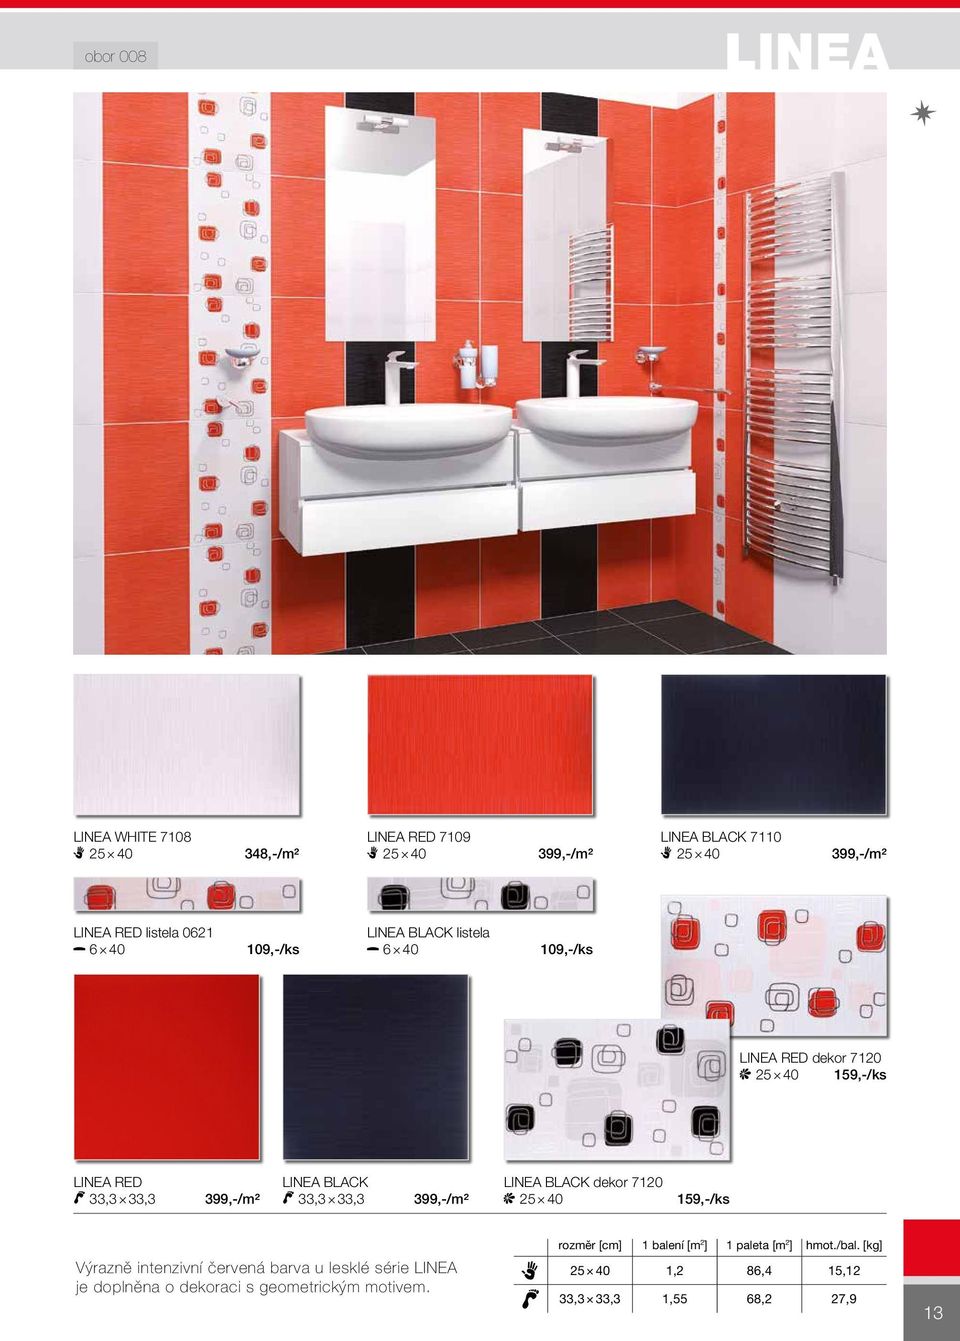 33,3 399,-/m² Linea BLACK 33,3 33,3 399,-/m² Linea BLACK dekor 7120 25 40 159,-/ks Výrazně intenzivní červená barva